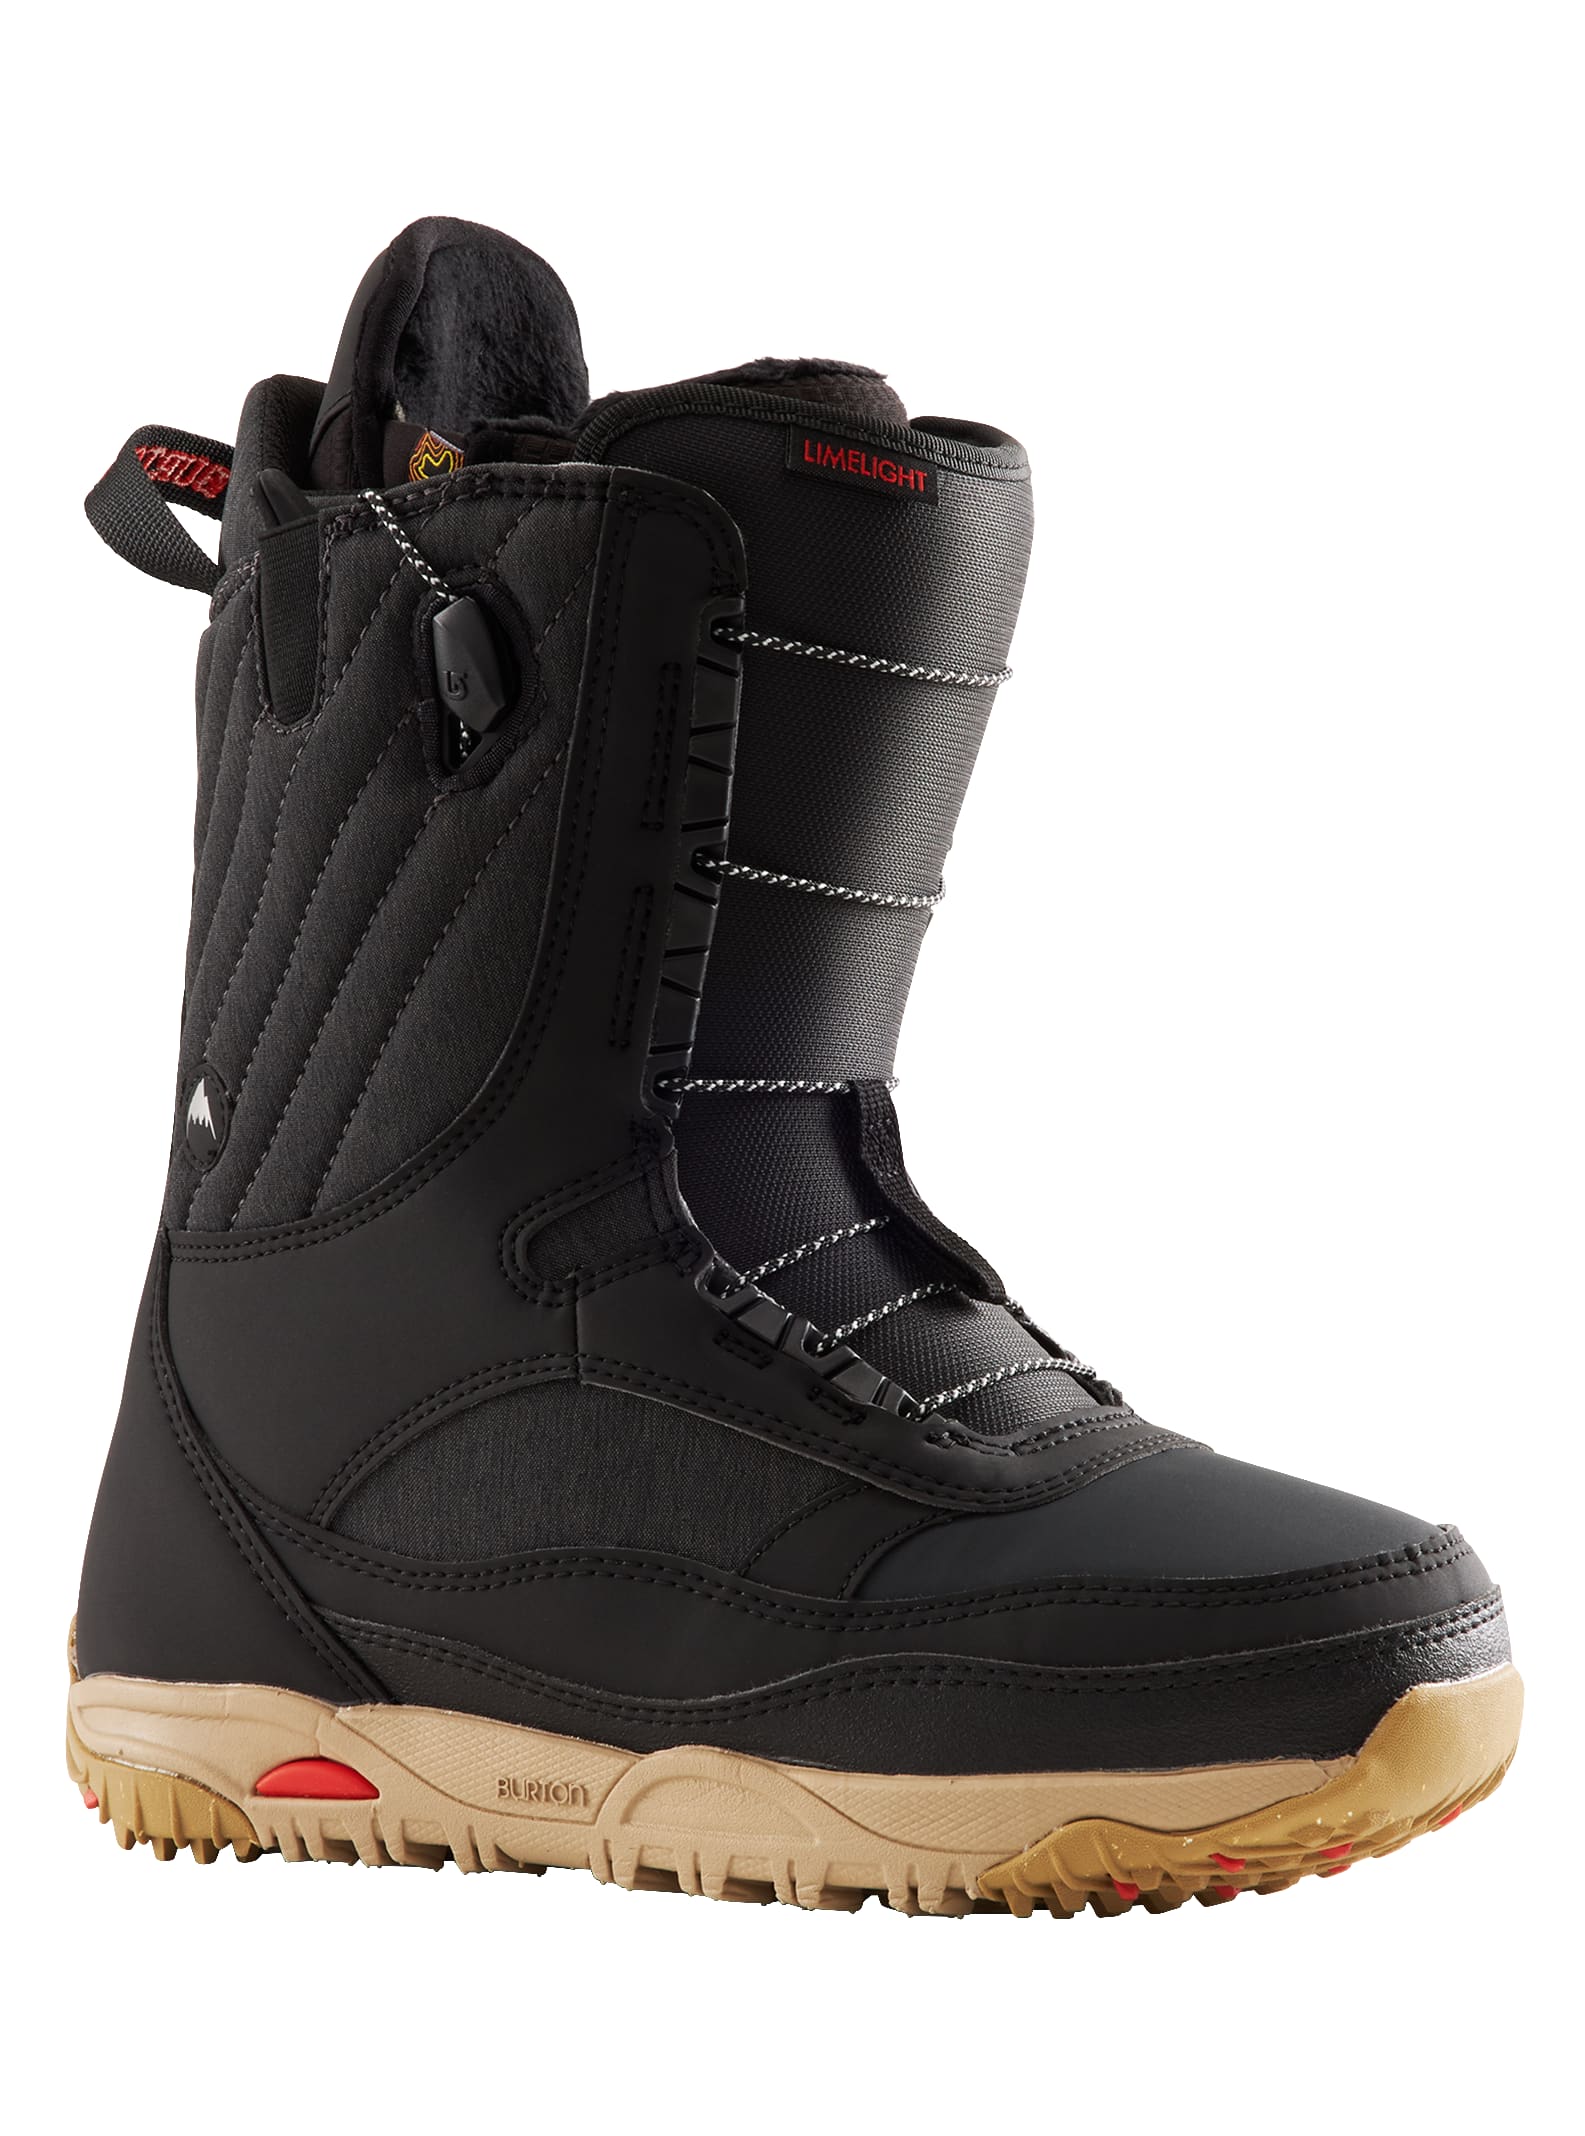 Burton - Boots de snowboard Limelight pour femme, Black, 9.0